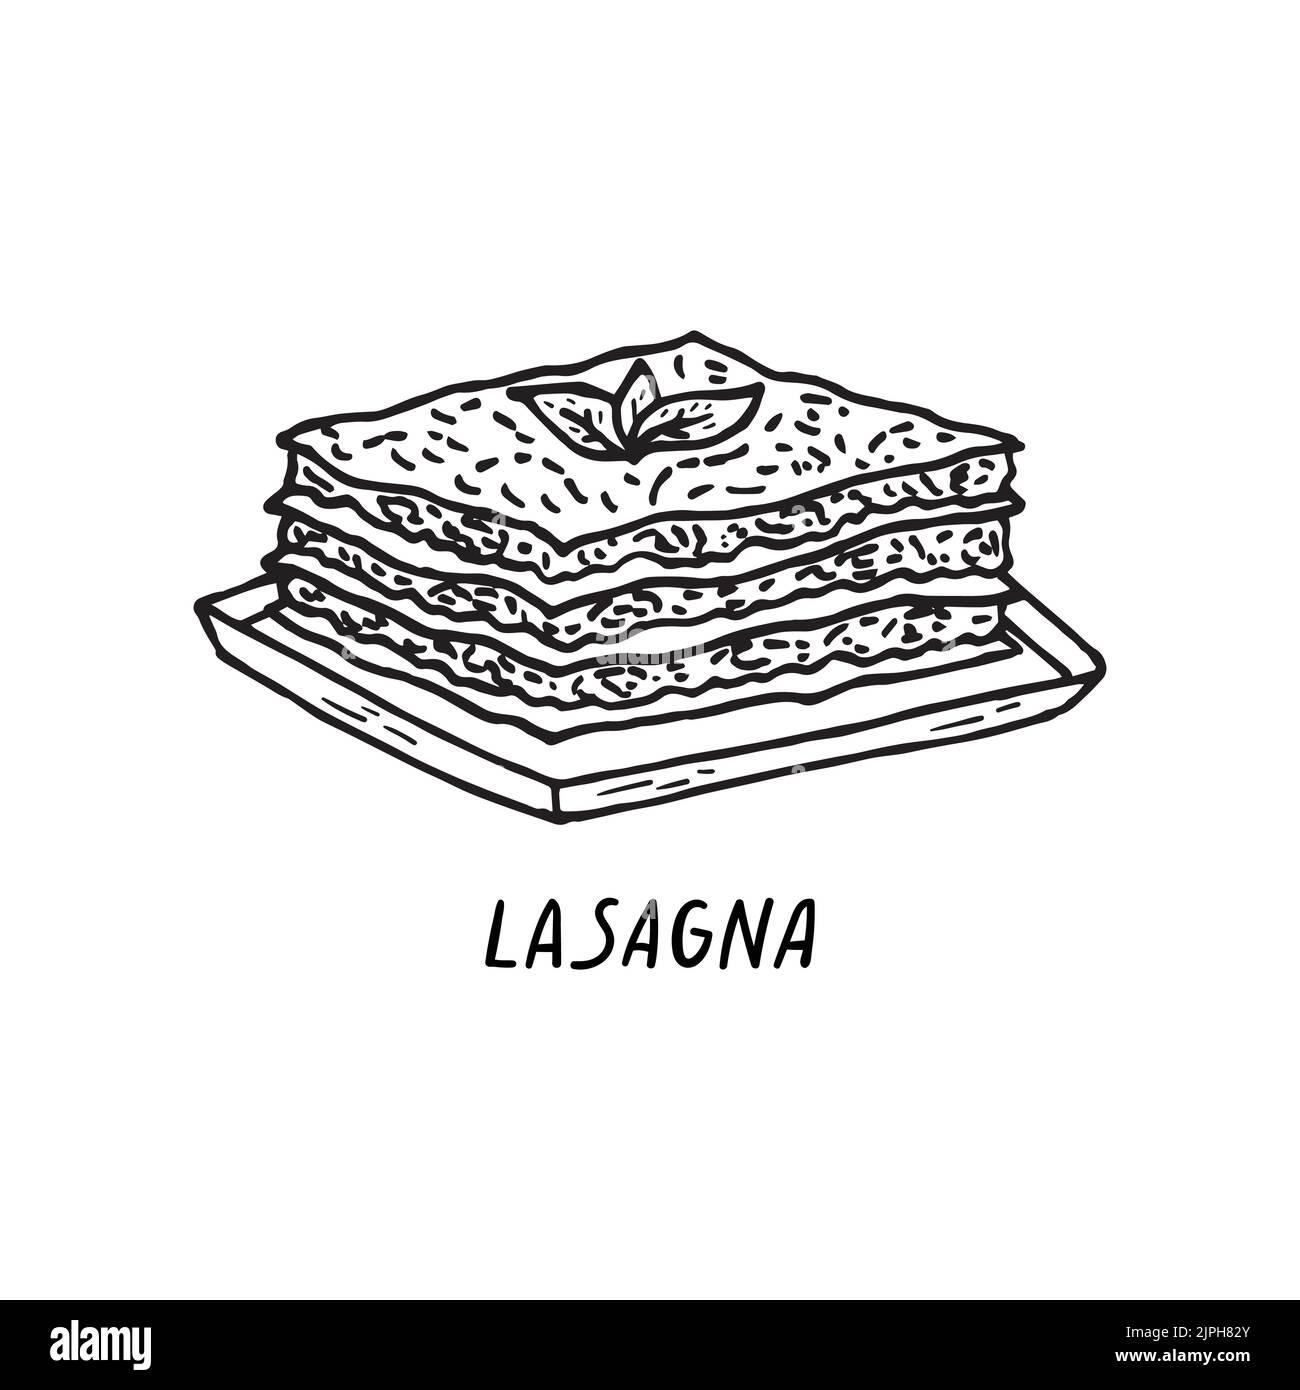 Illustrazione vettoriale della cucina italiana disegnata a mano. Lasagne. Illustrazione Vettoriale